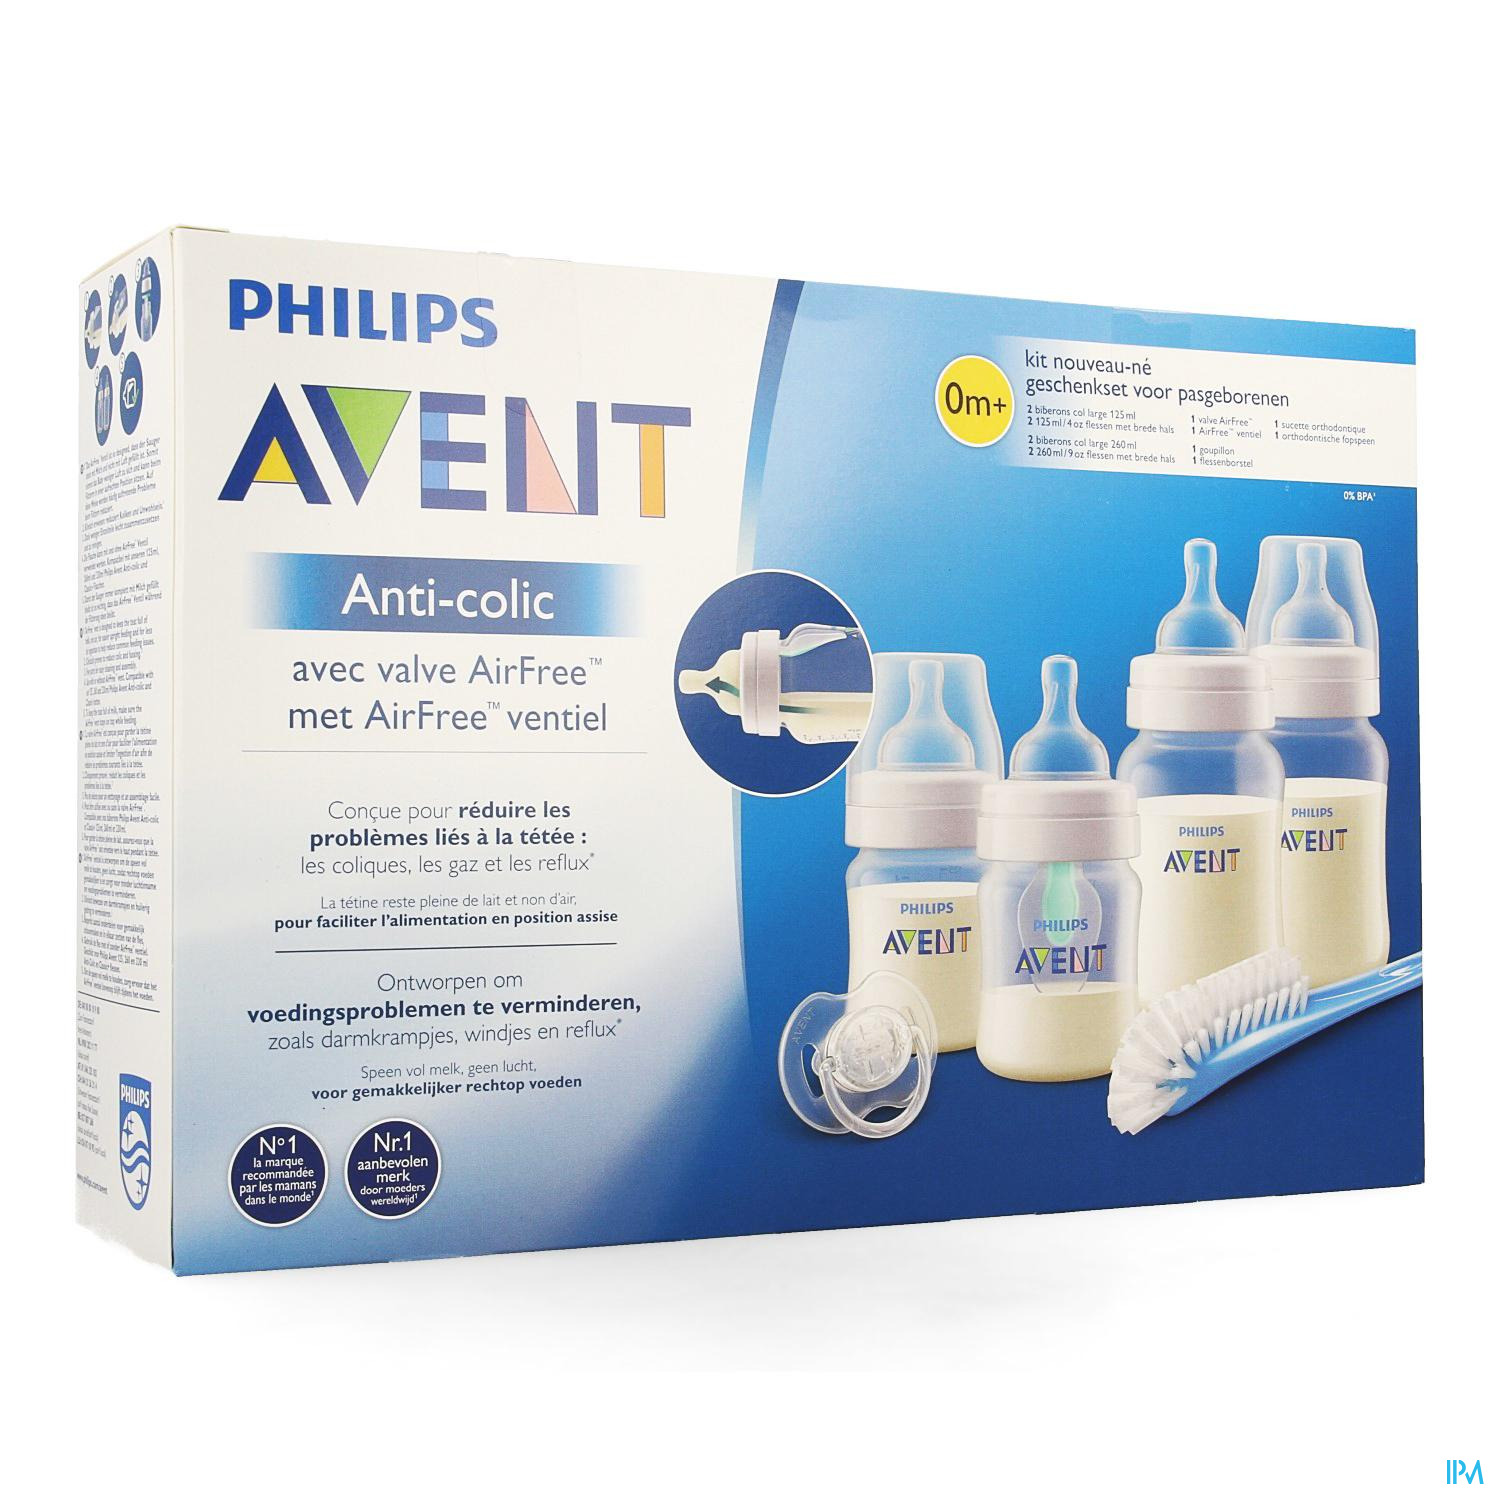 Philips Avent A/colic Kit Nouveau-ne Scf807/00 - Bouteilles